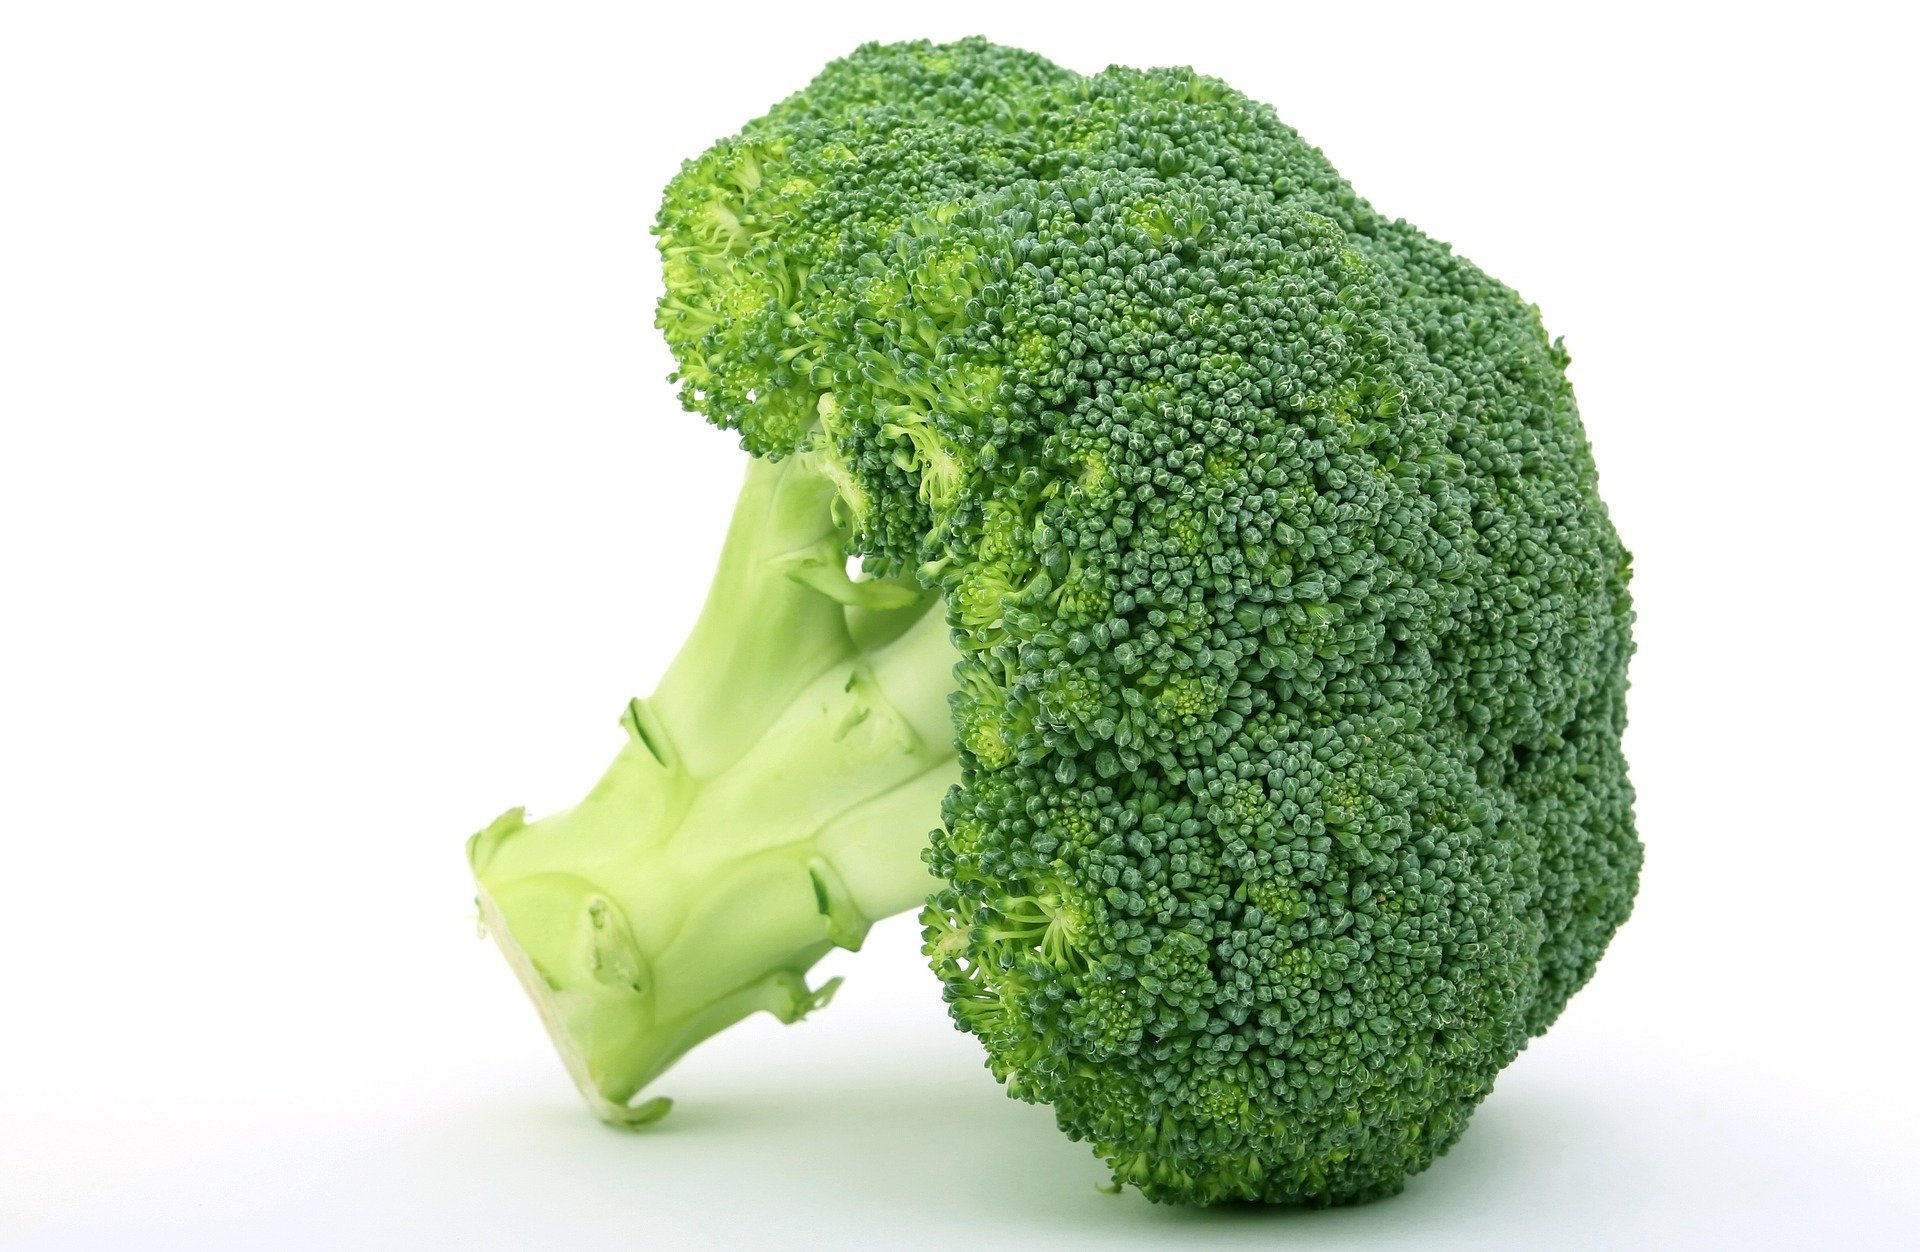 quiz z hiszpańskiego warzywa verdura test wiedzy łatwy brokuły brecoles